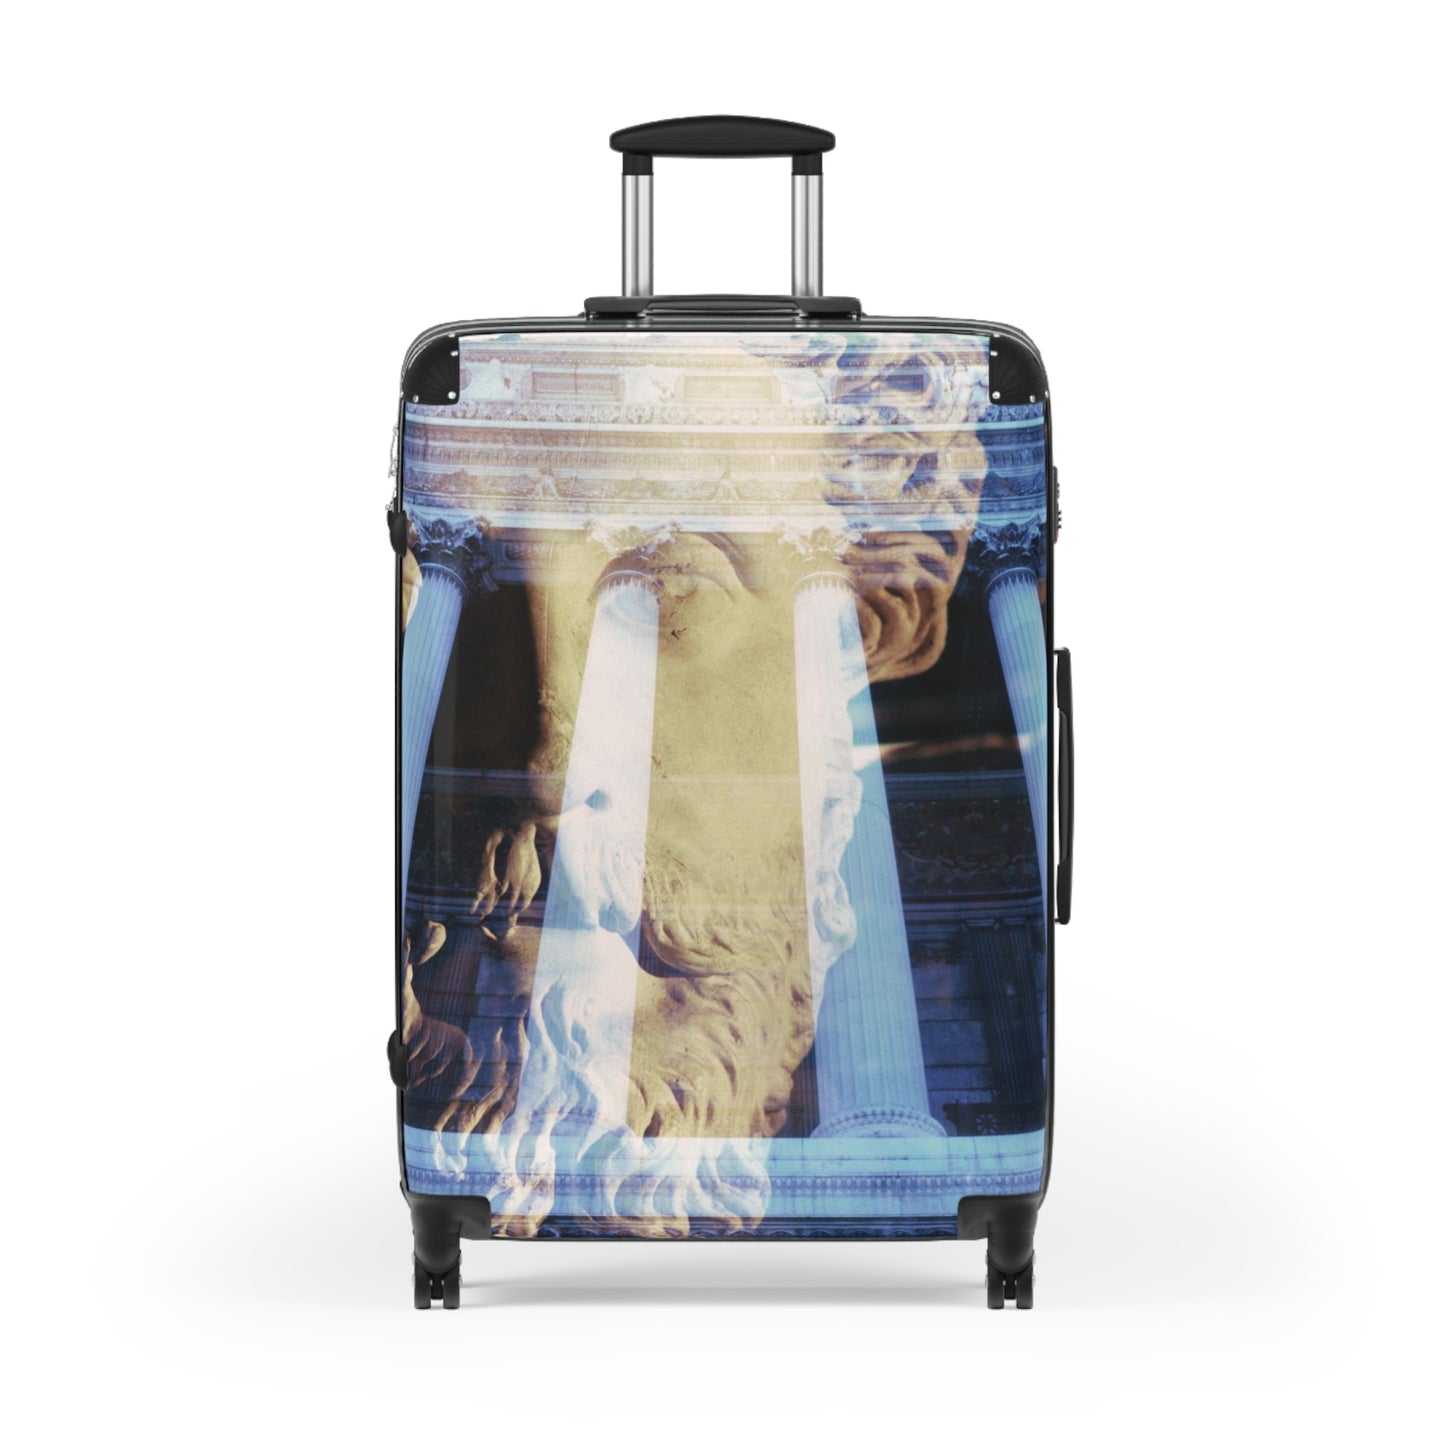 Visions of Marcus Aurelius Luggage